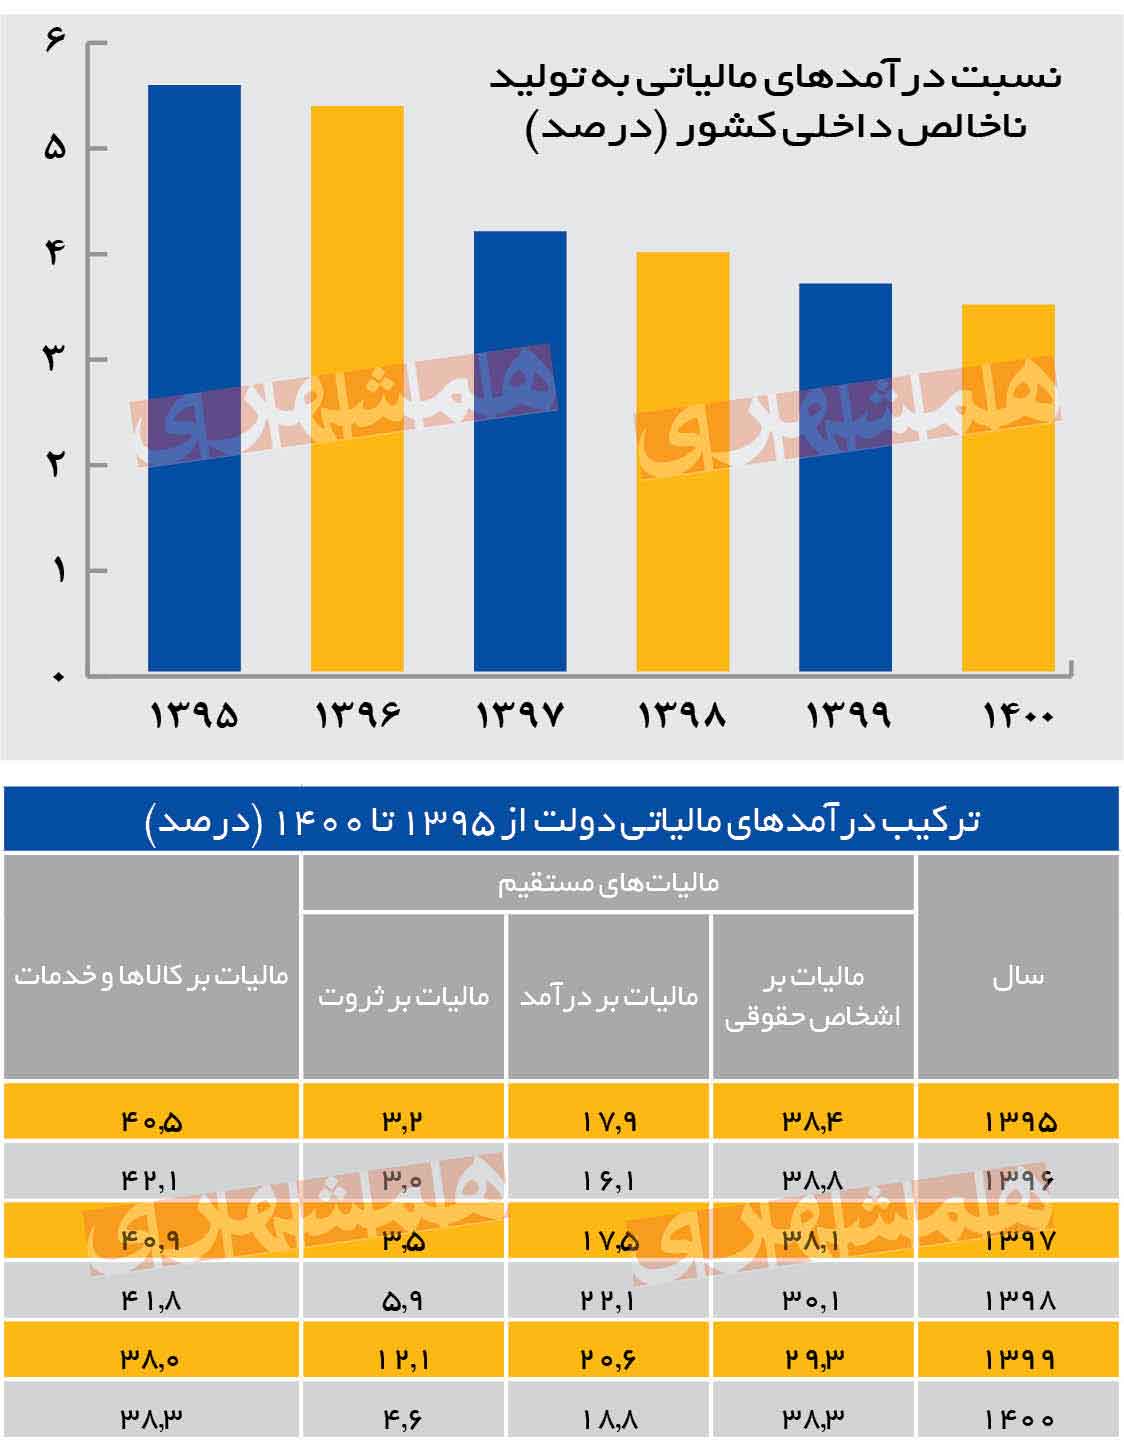 ترکیب درآمدهای مالیاتی در اقتصاد ایران